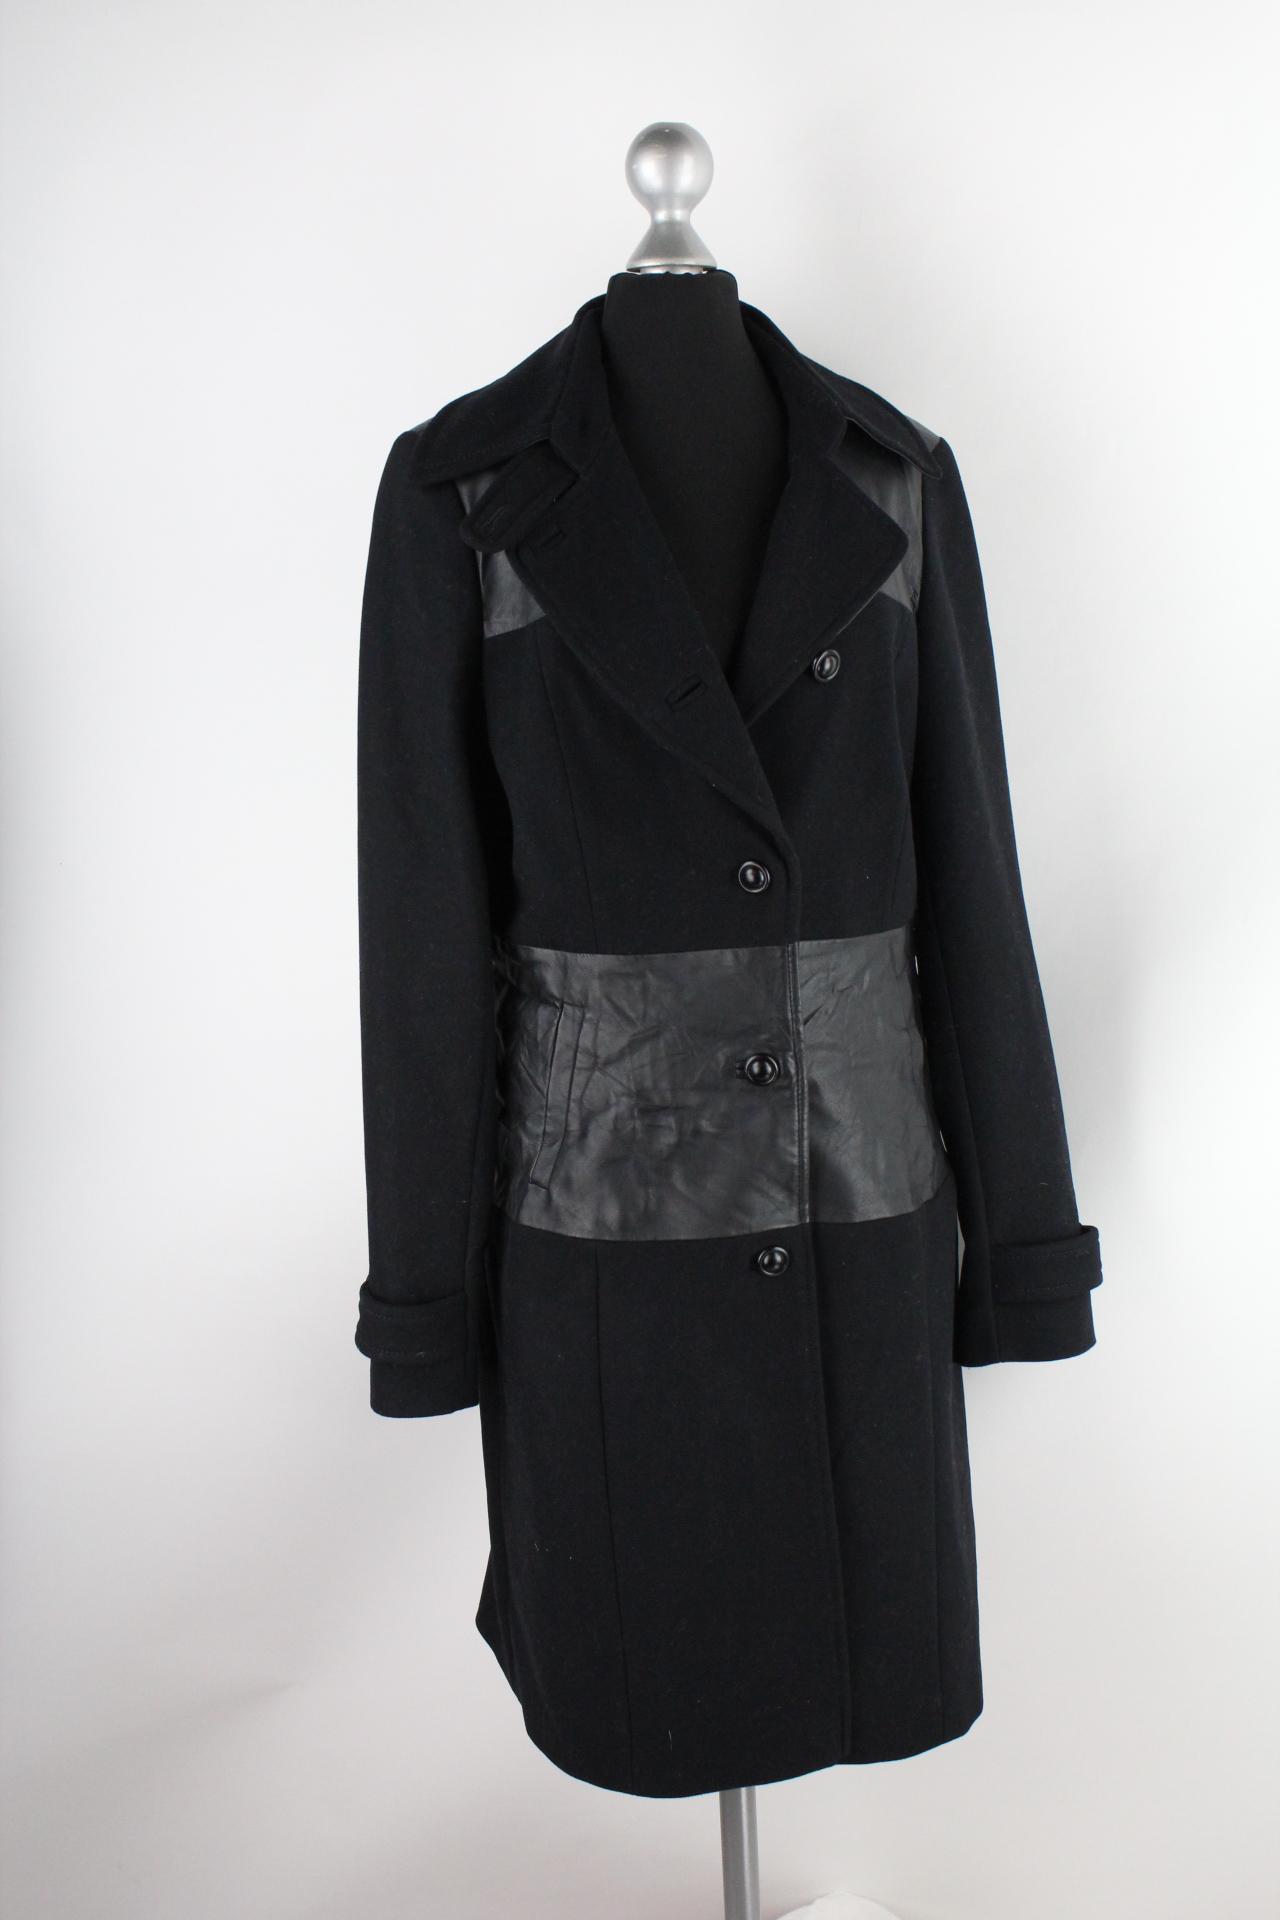 Expresso Damen-Mantel schwarz Größe 38